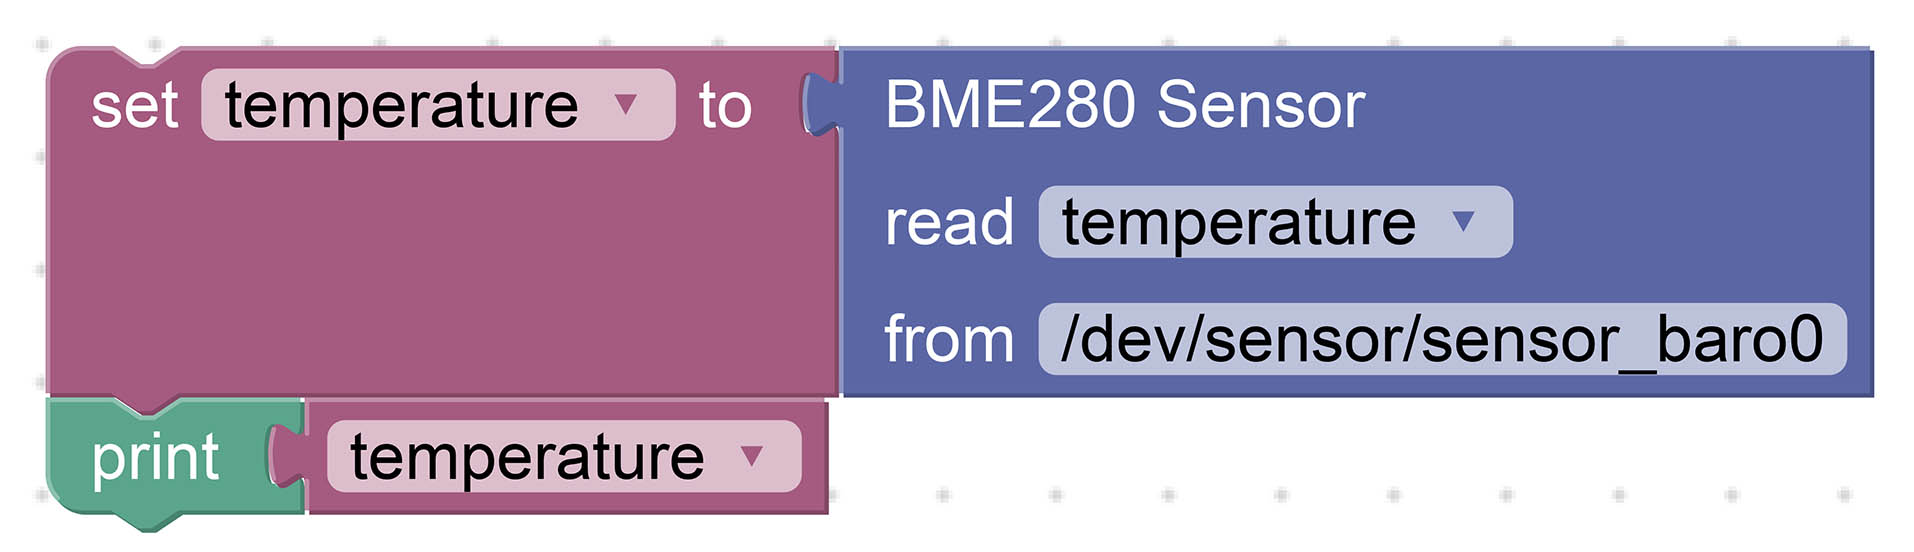 BME280 Sensor Block